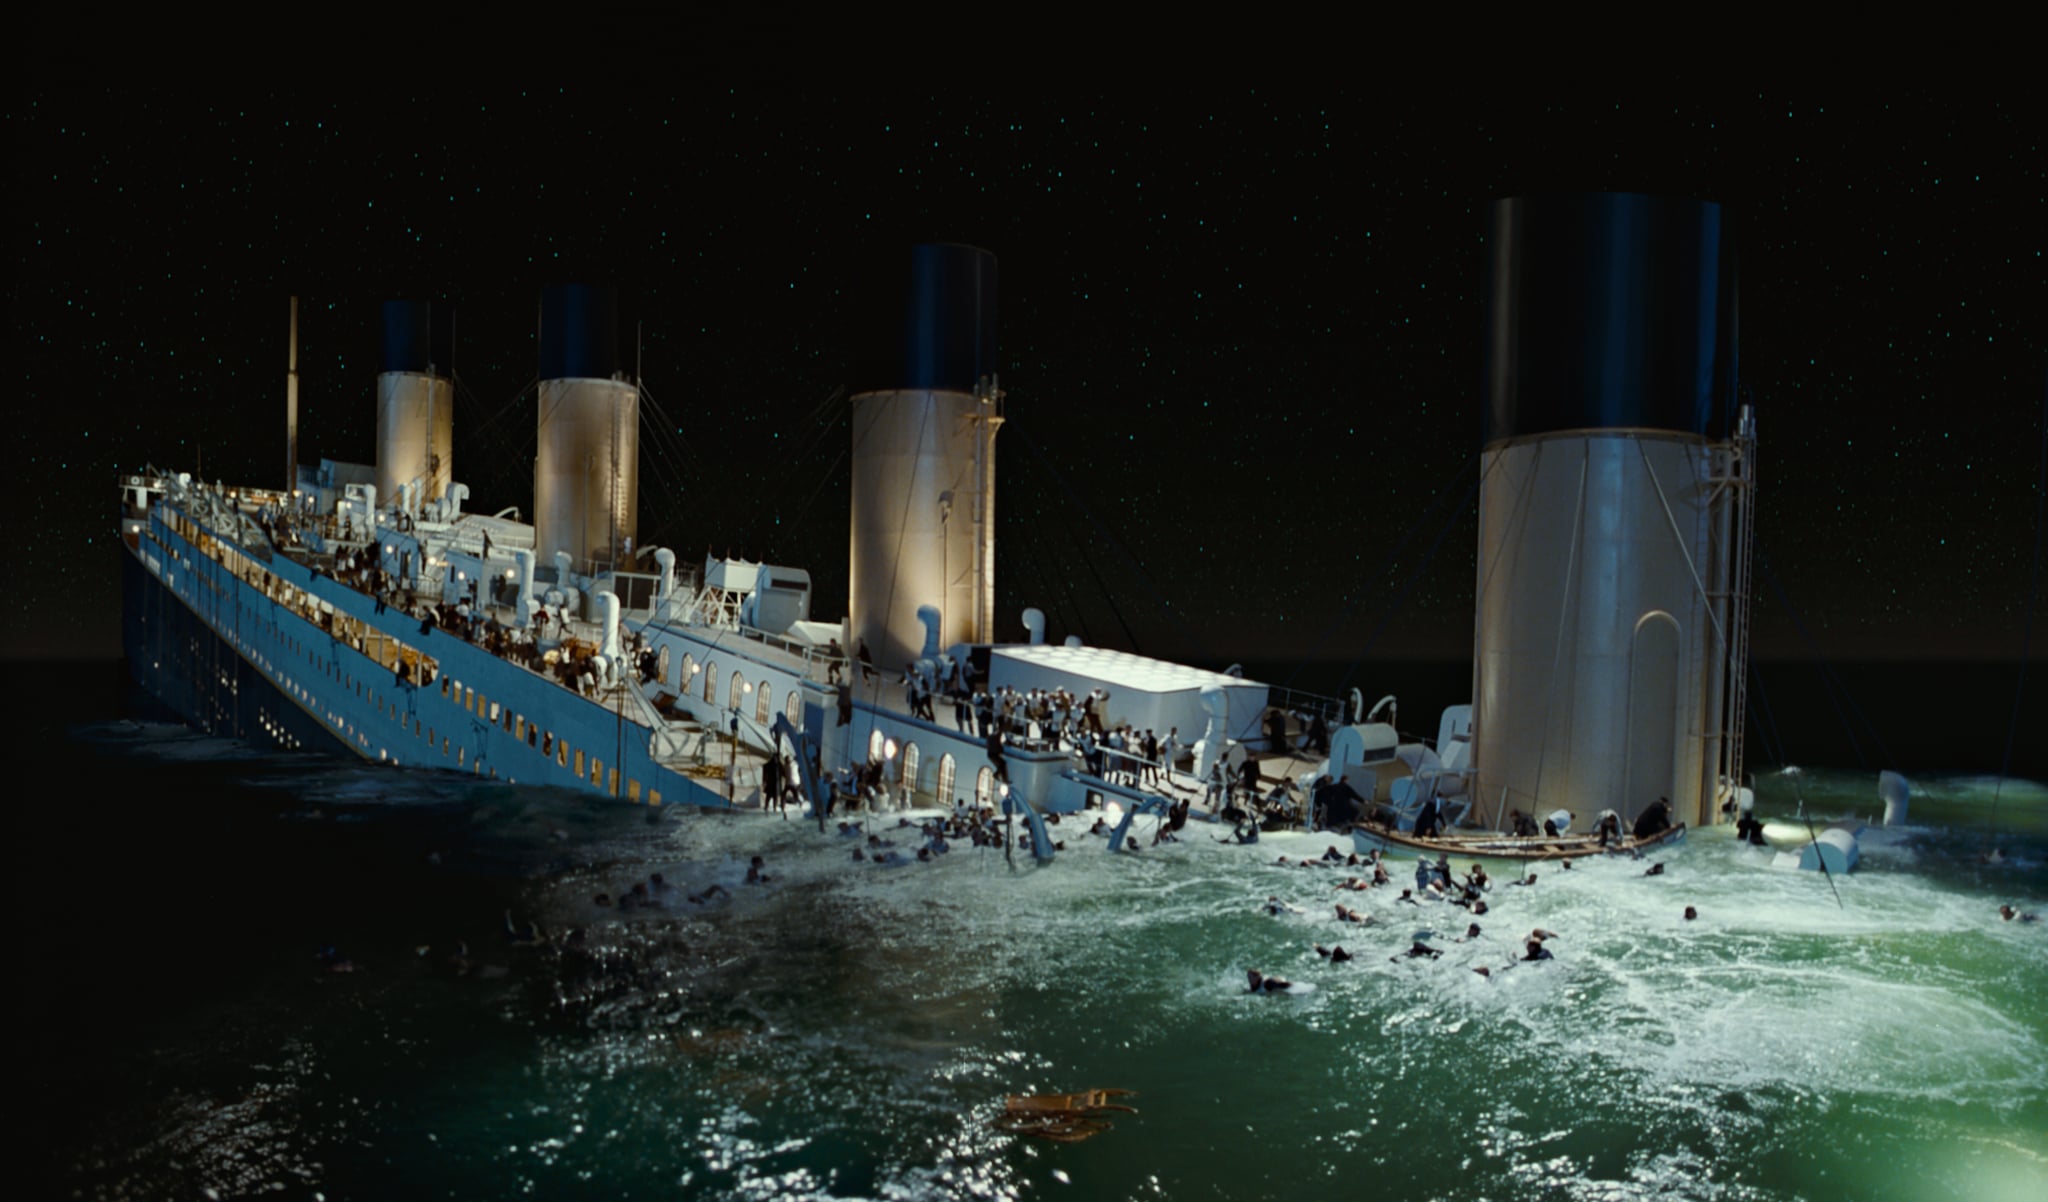 film titanic full version free